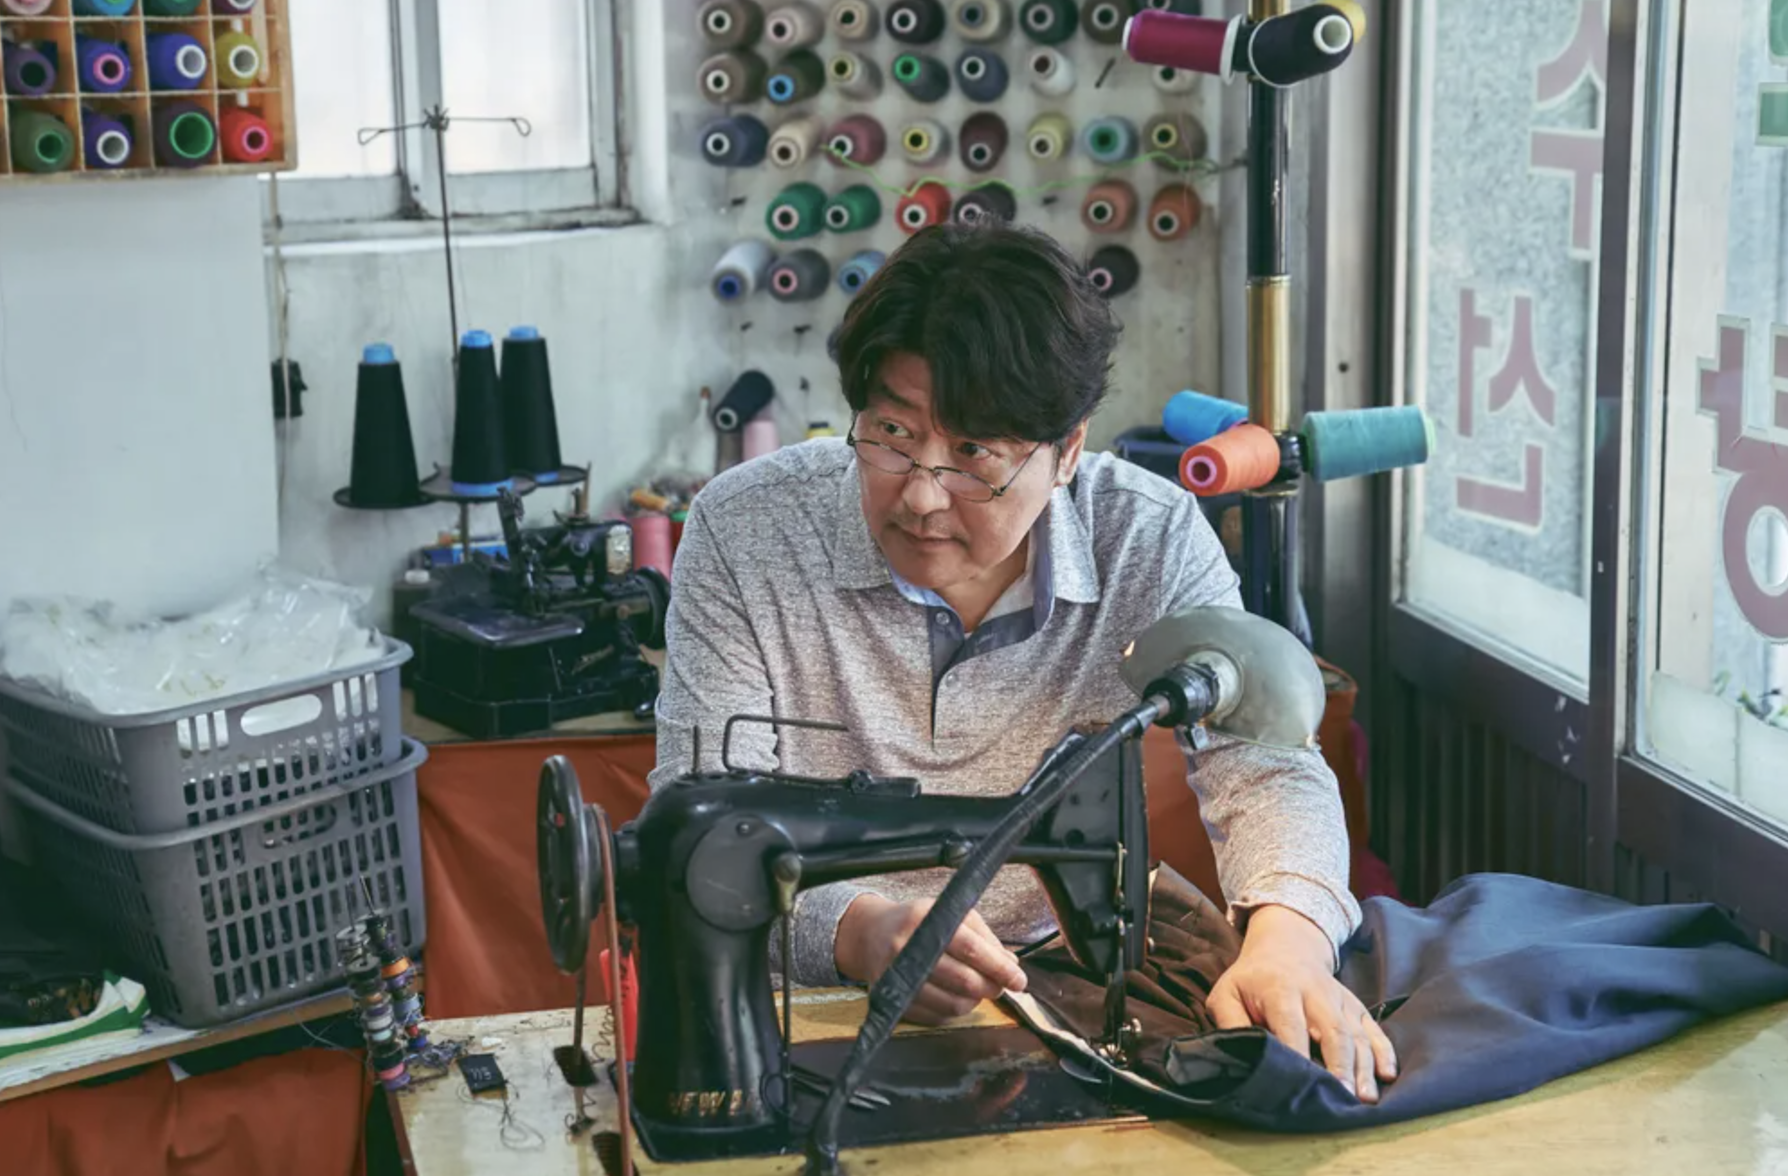 Song Kang-ho at a sewing machine